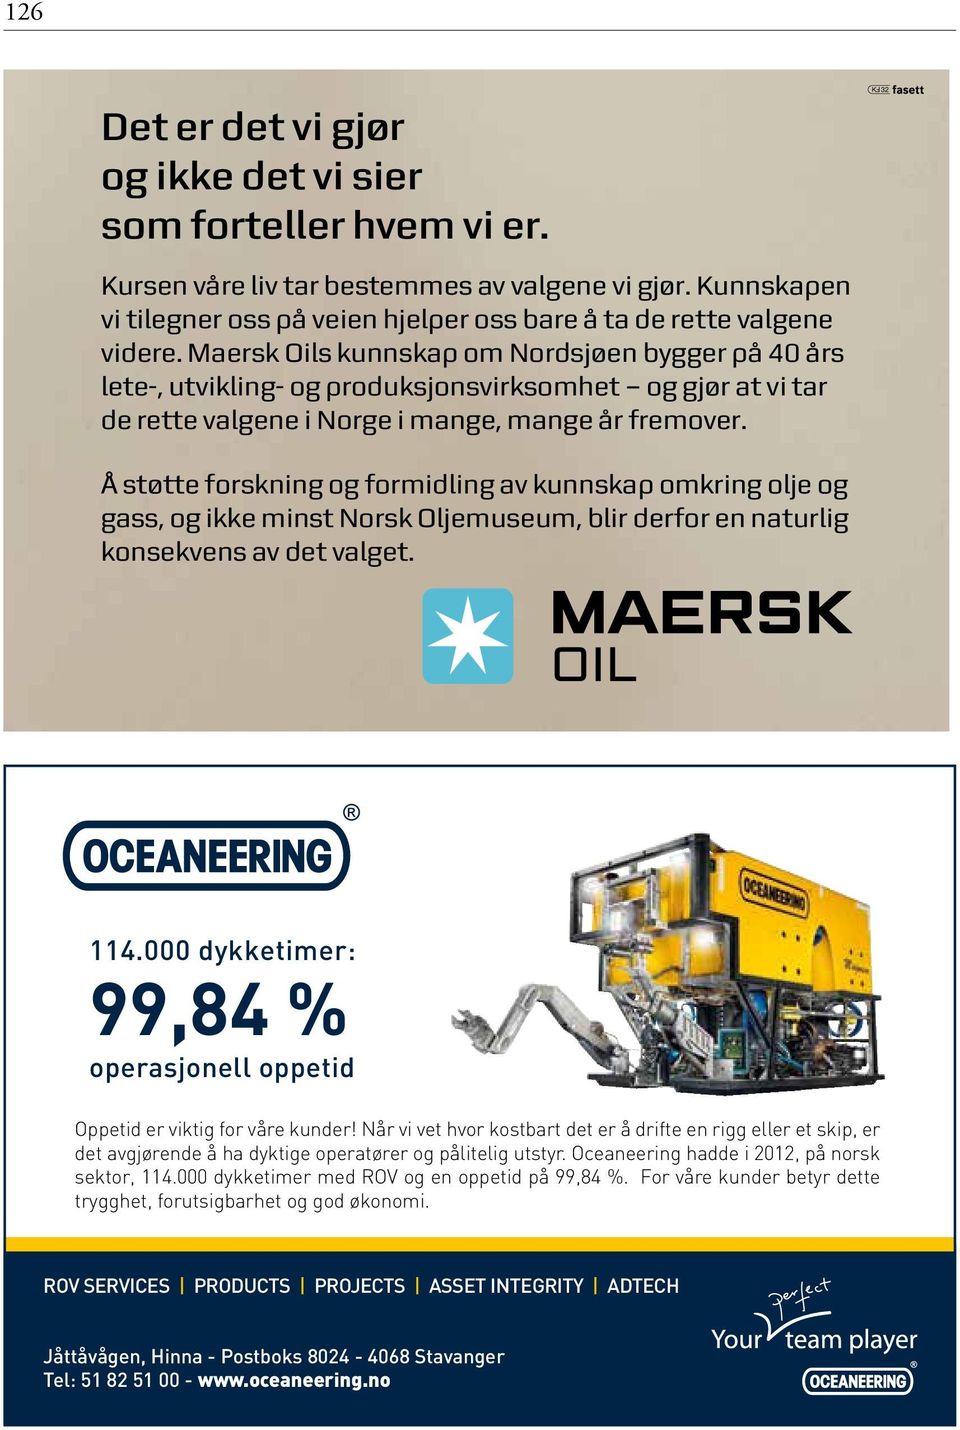 Maersk Oils kunnskap om Nordsjøen bygger på 40 års lete-, utvikling- og produksjonsvirksomhet og gjør at vi tar de rette valgene i Norge i mange, mange år fremover.